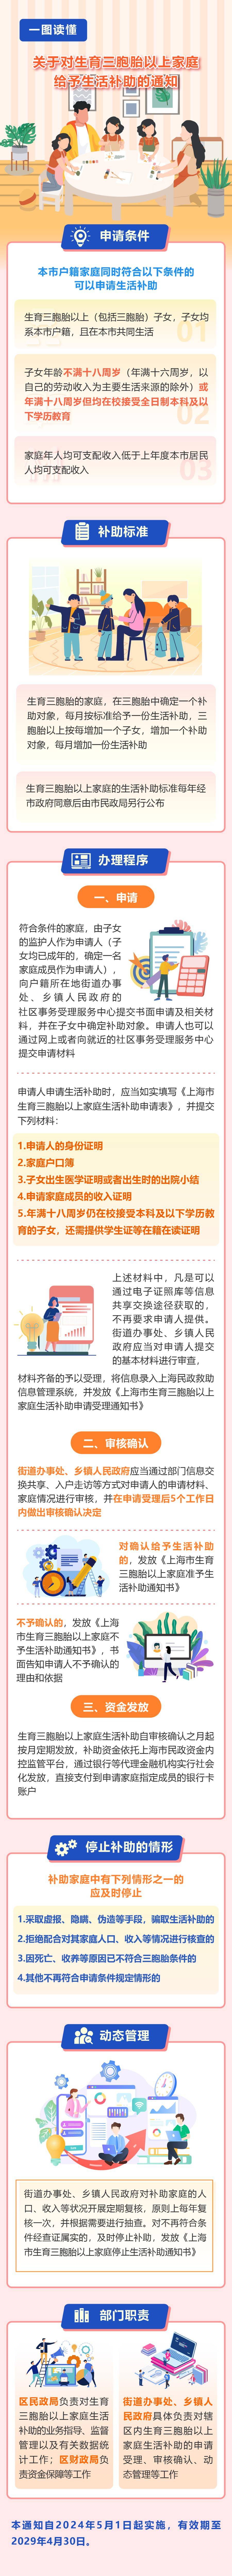 上海三胞胎家庭每月补助1970元_上海双胞胎补贴_上海生育双胞胎补贴